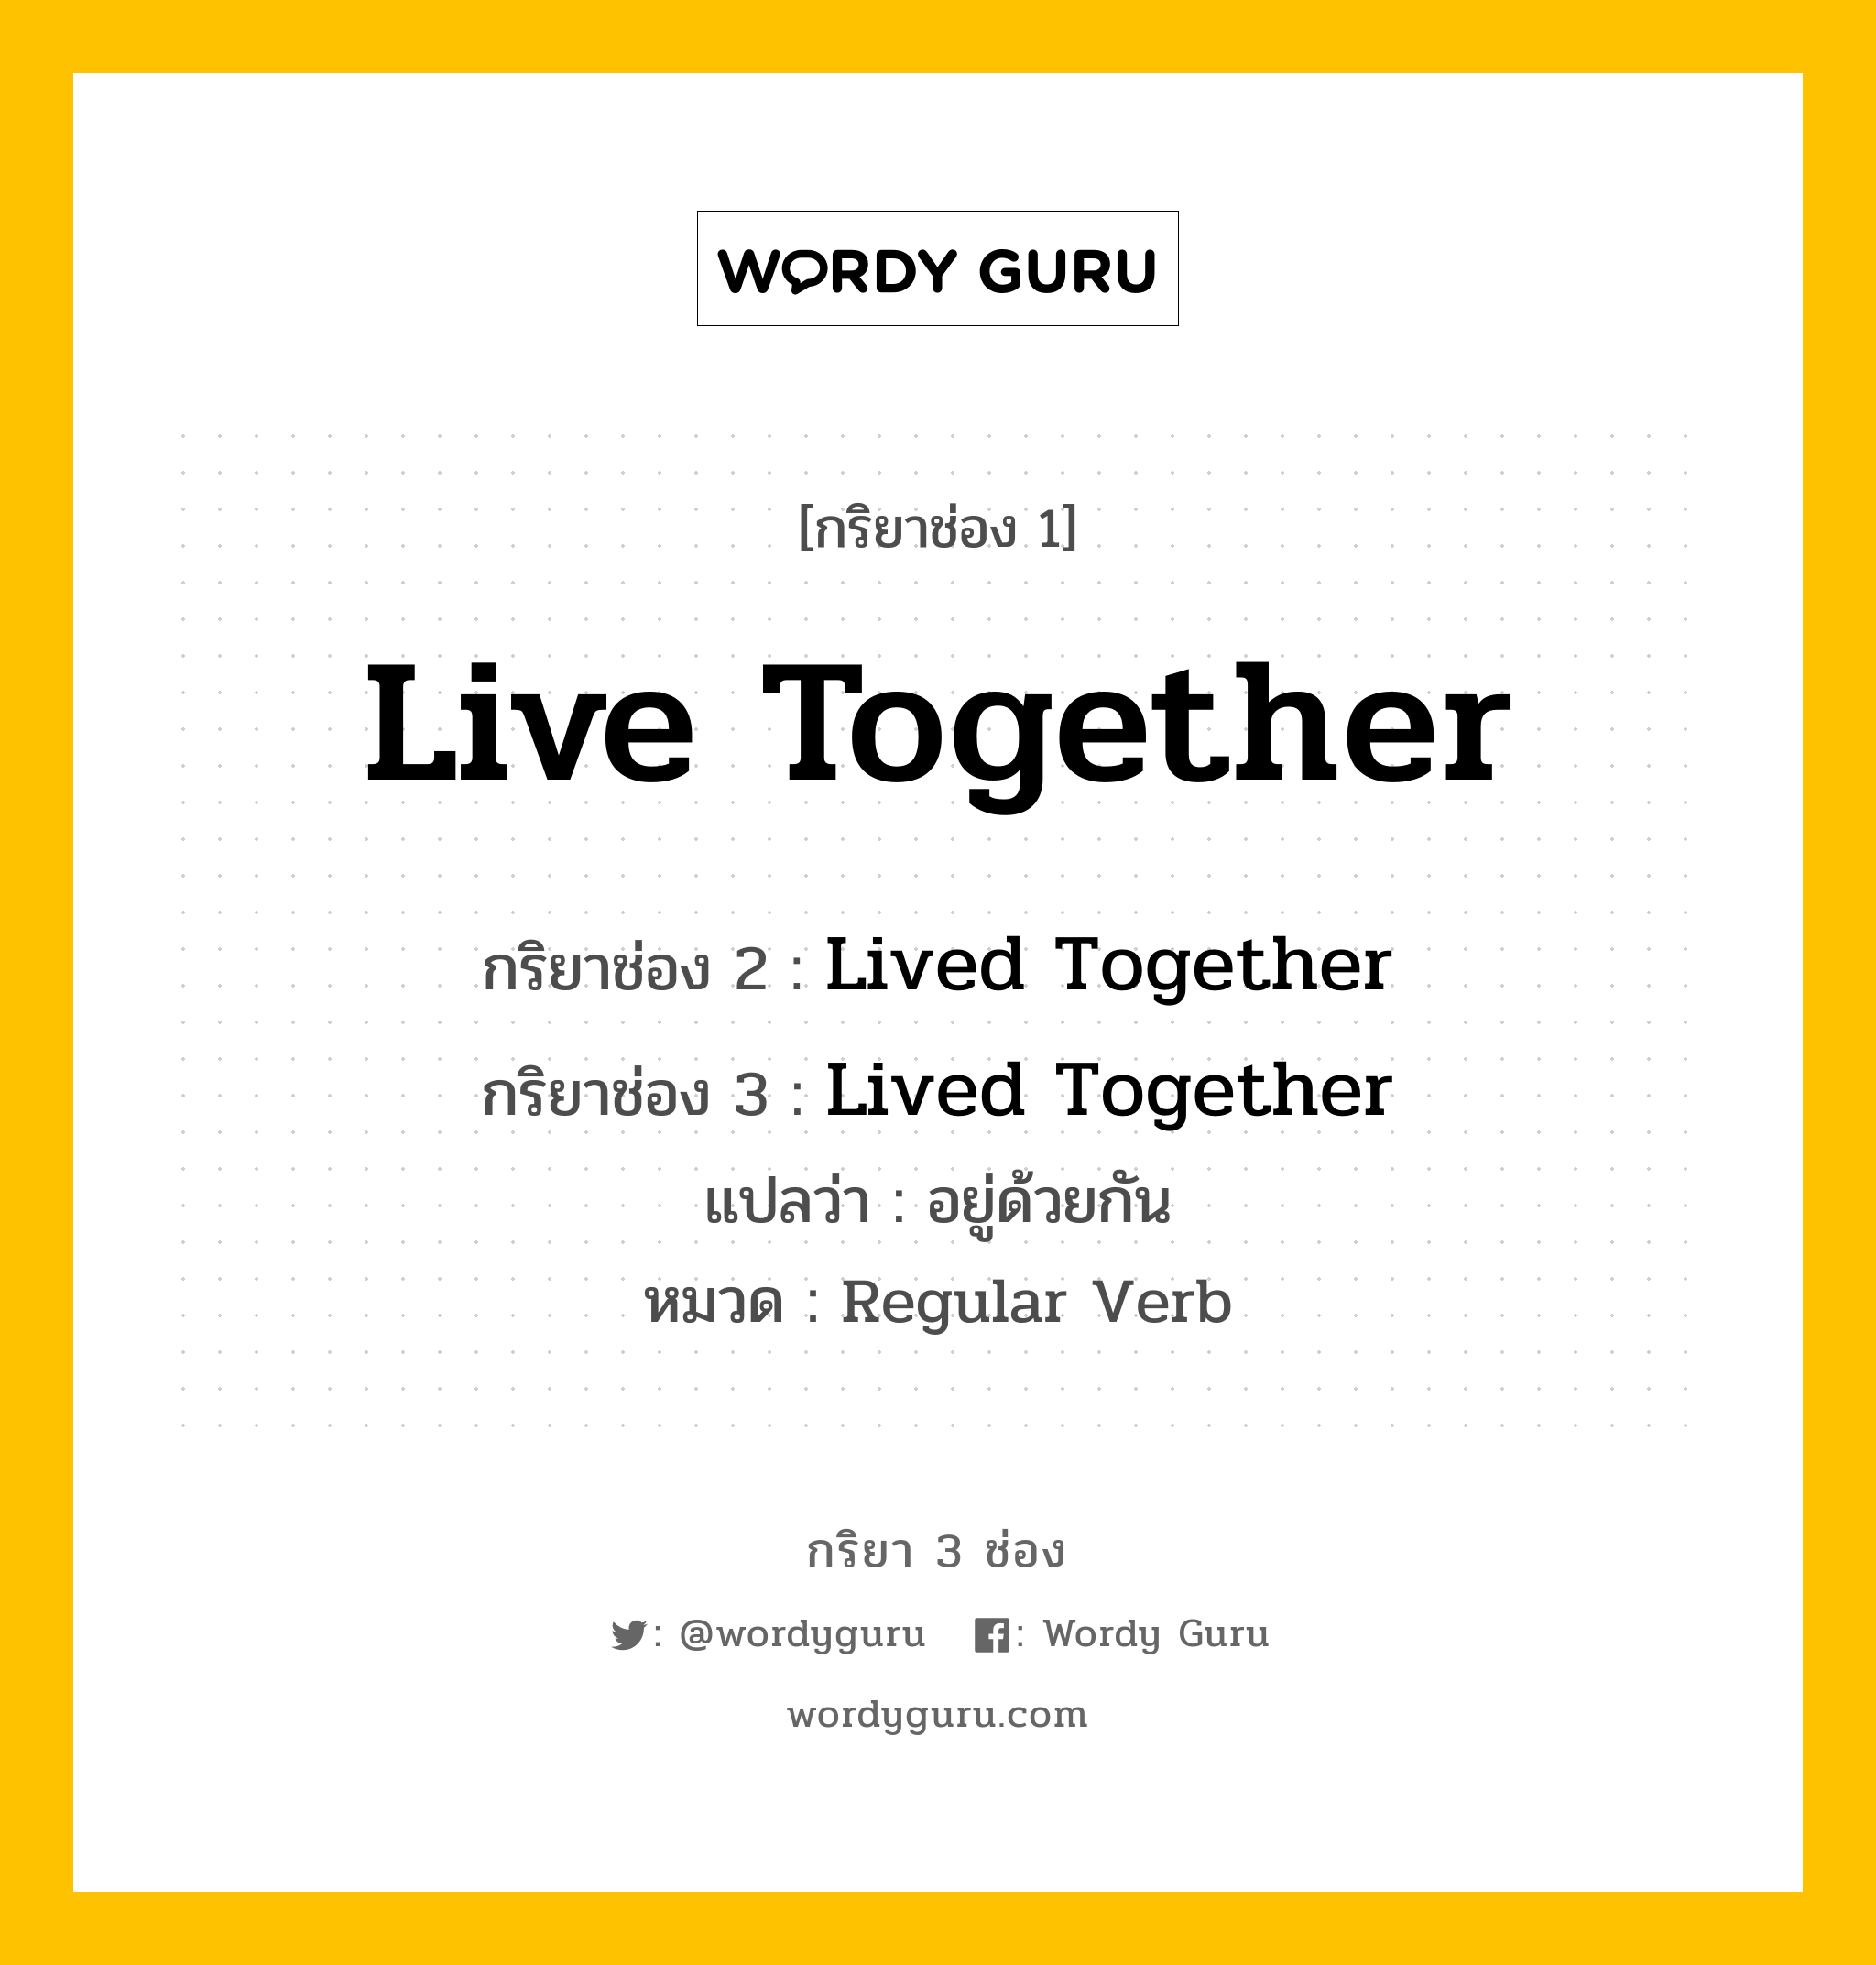 กริยา 3 ช่อง: Live Together ช่อง 2 Live Together ช่อง 3 คืออะไร, กริยาช่อง 1 Live Together กริยาช่อง 2 Lived Together กริยาช่อง 3 Lived Together แปลว่า อยู่ด้วยกัน หมวด Regular Verb หมวด Regular Verb